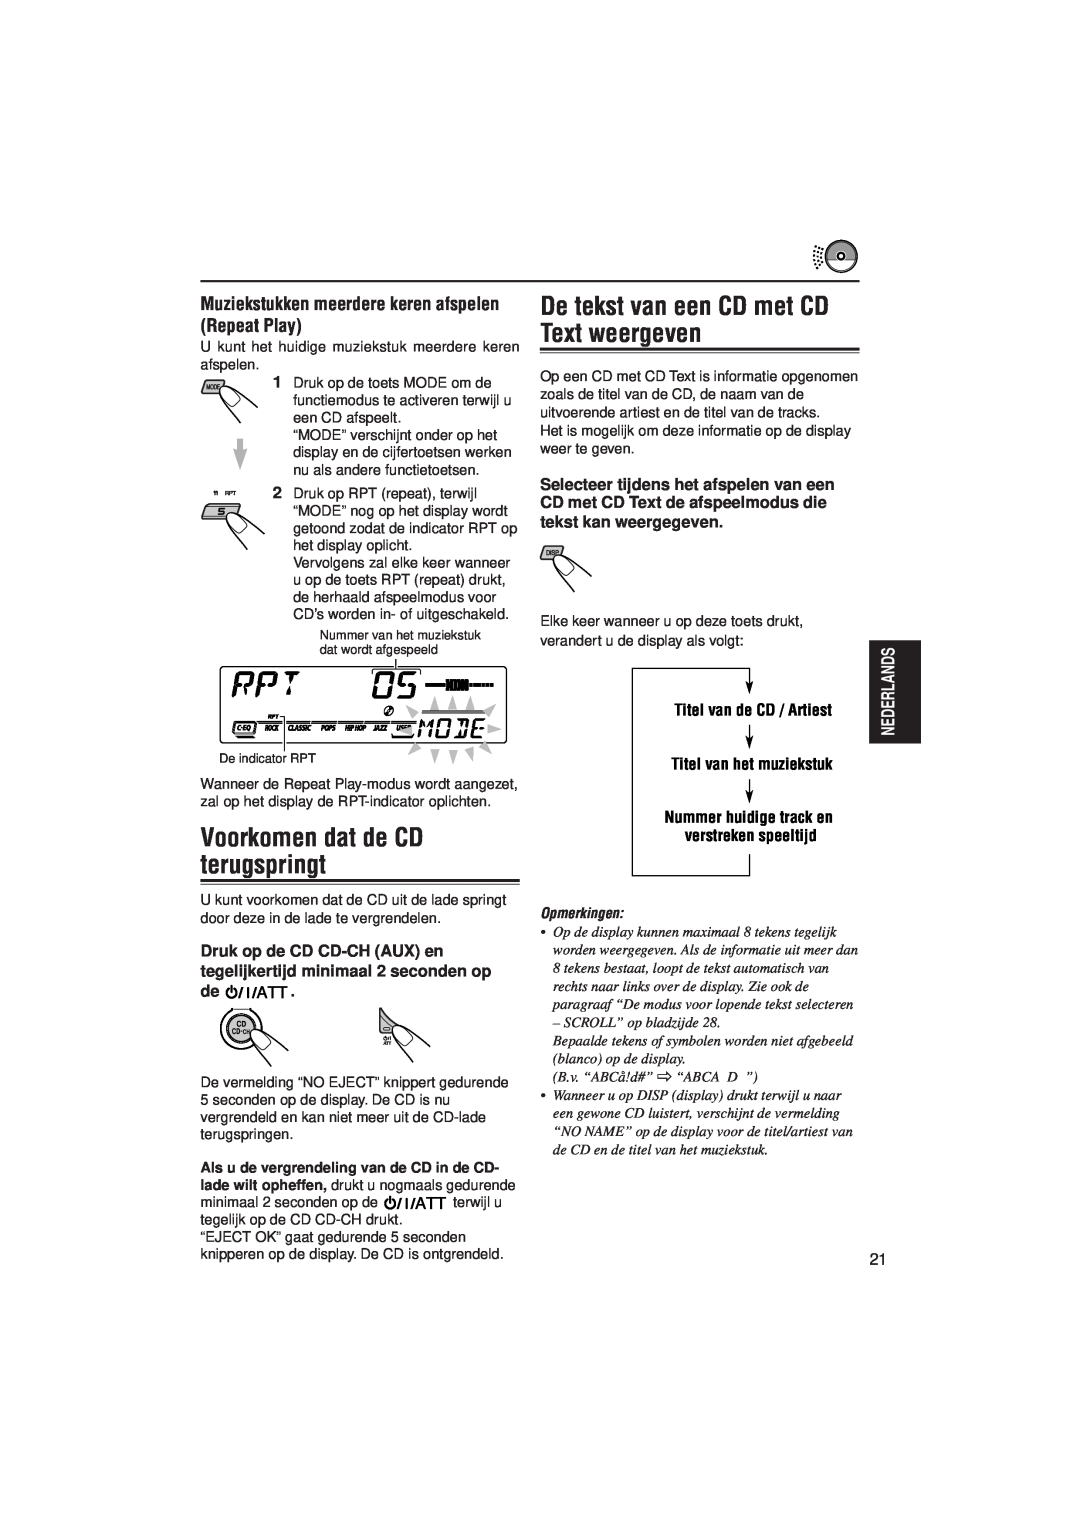 JVC KD-SX992R manual Voorkomen dat de CD terugspringt, De tekst van een CD met CD Text weergeven, Titel van de CD / Artiest 